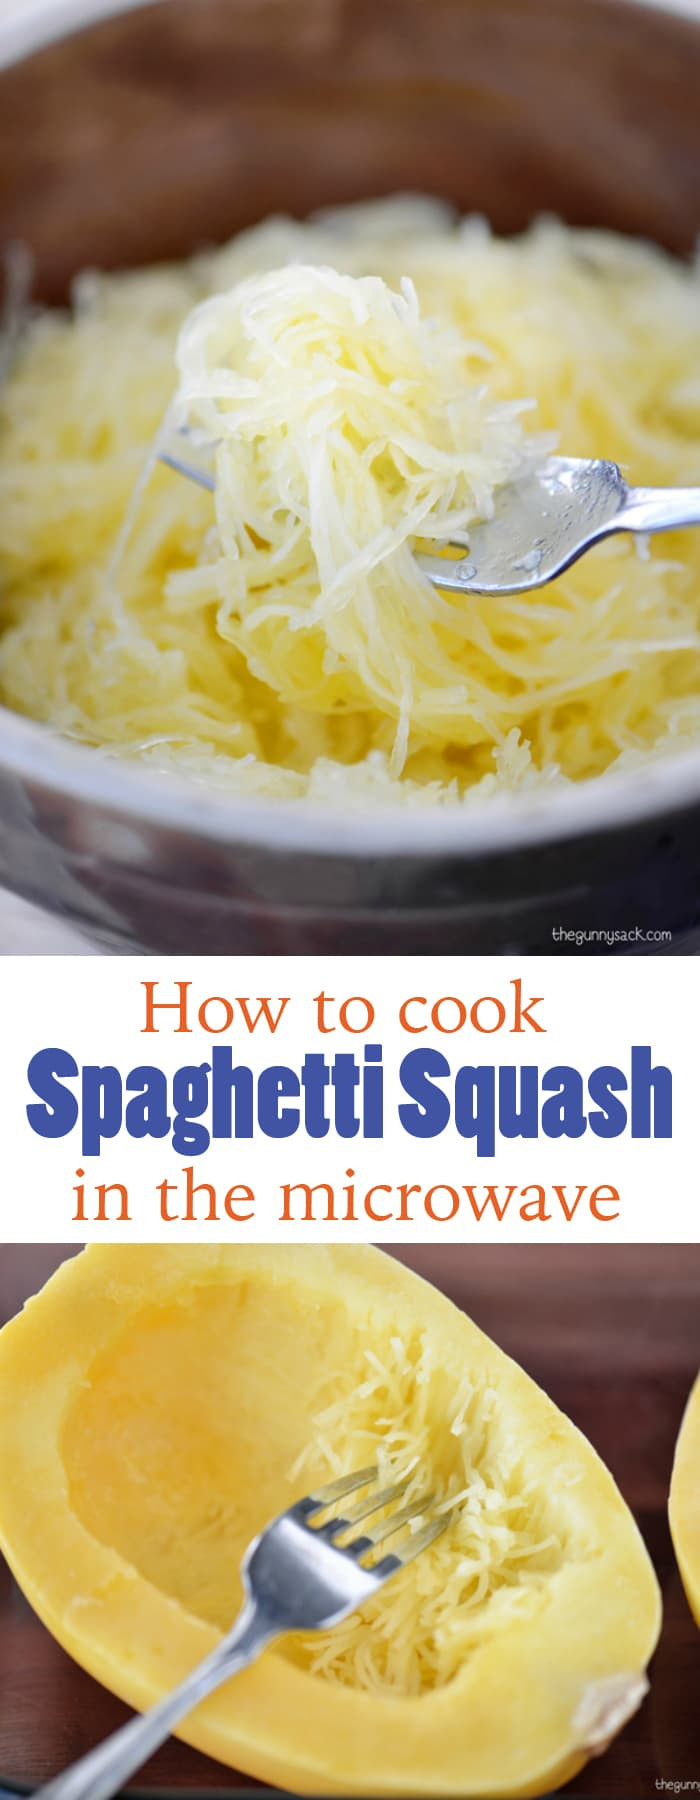 Spaghetti Squash Recipe Microwave
 Recipe For Spaghetti Squash With Meatballs